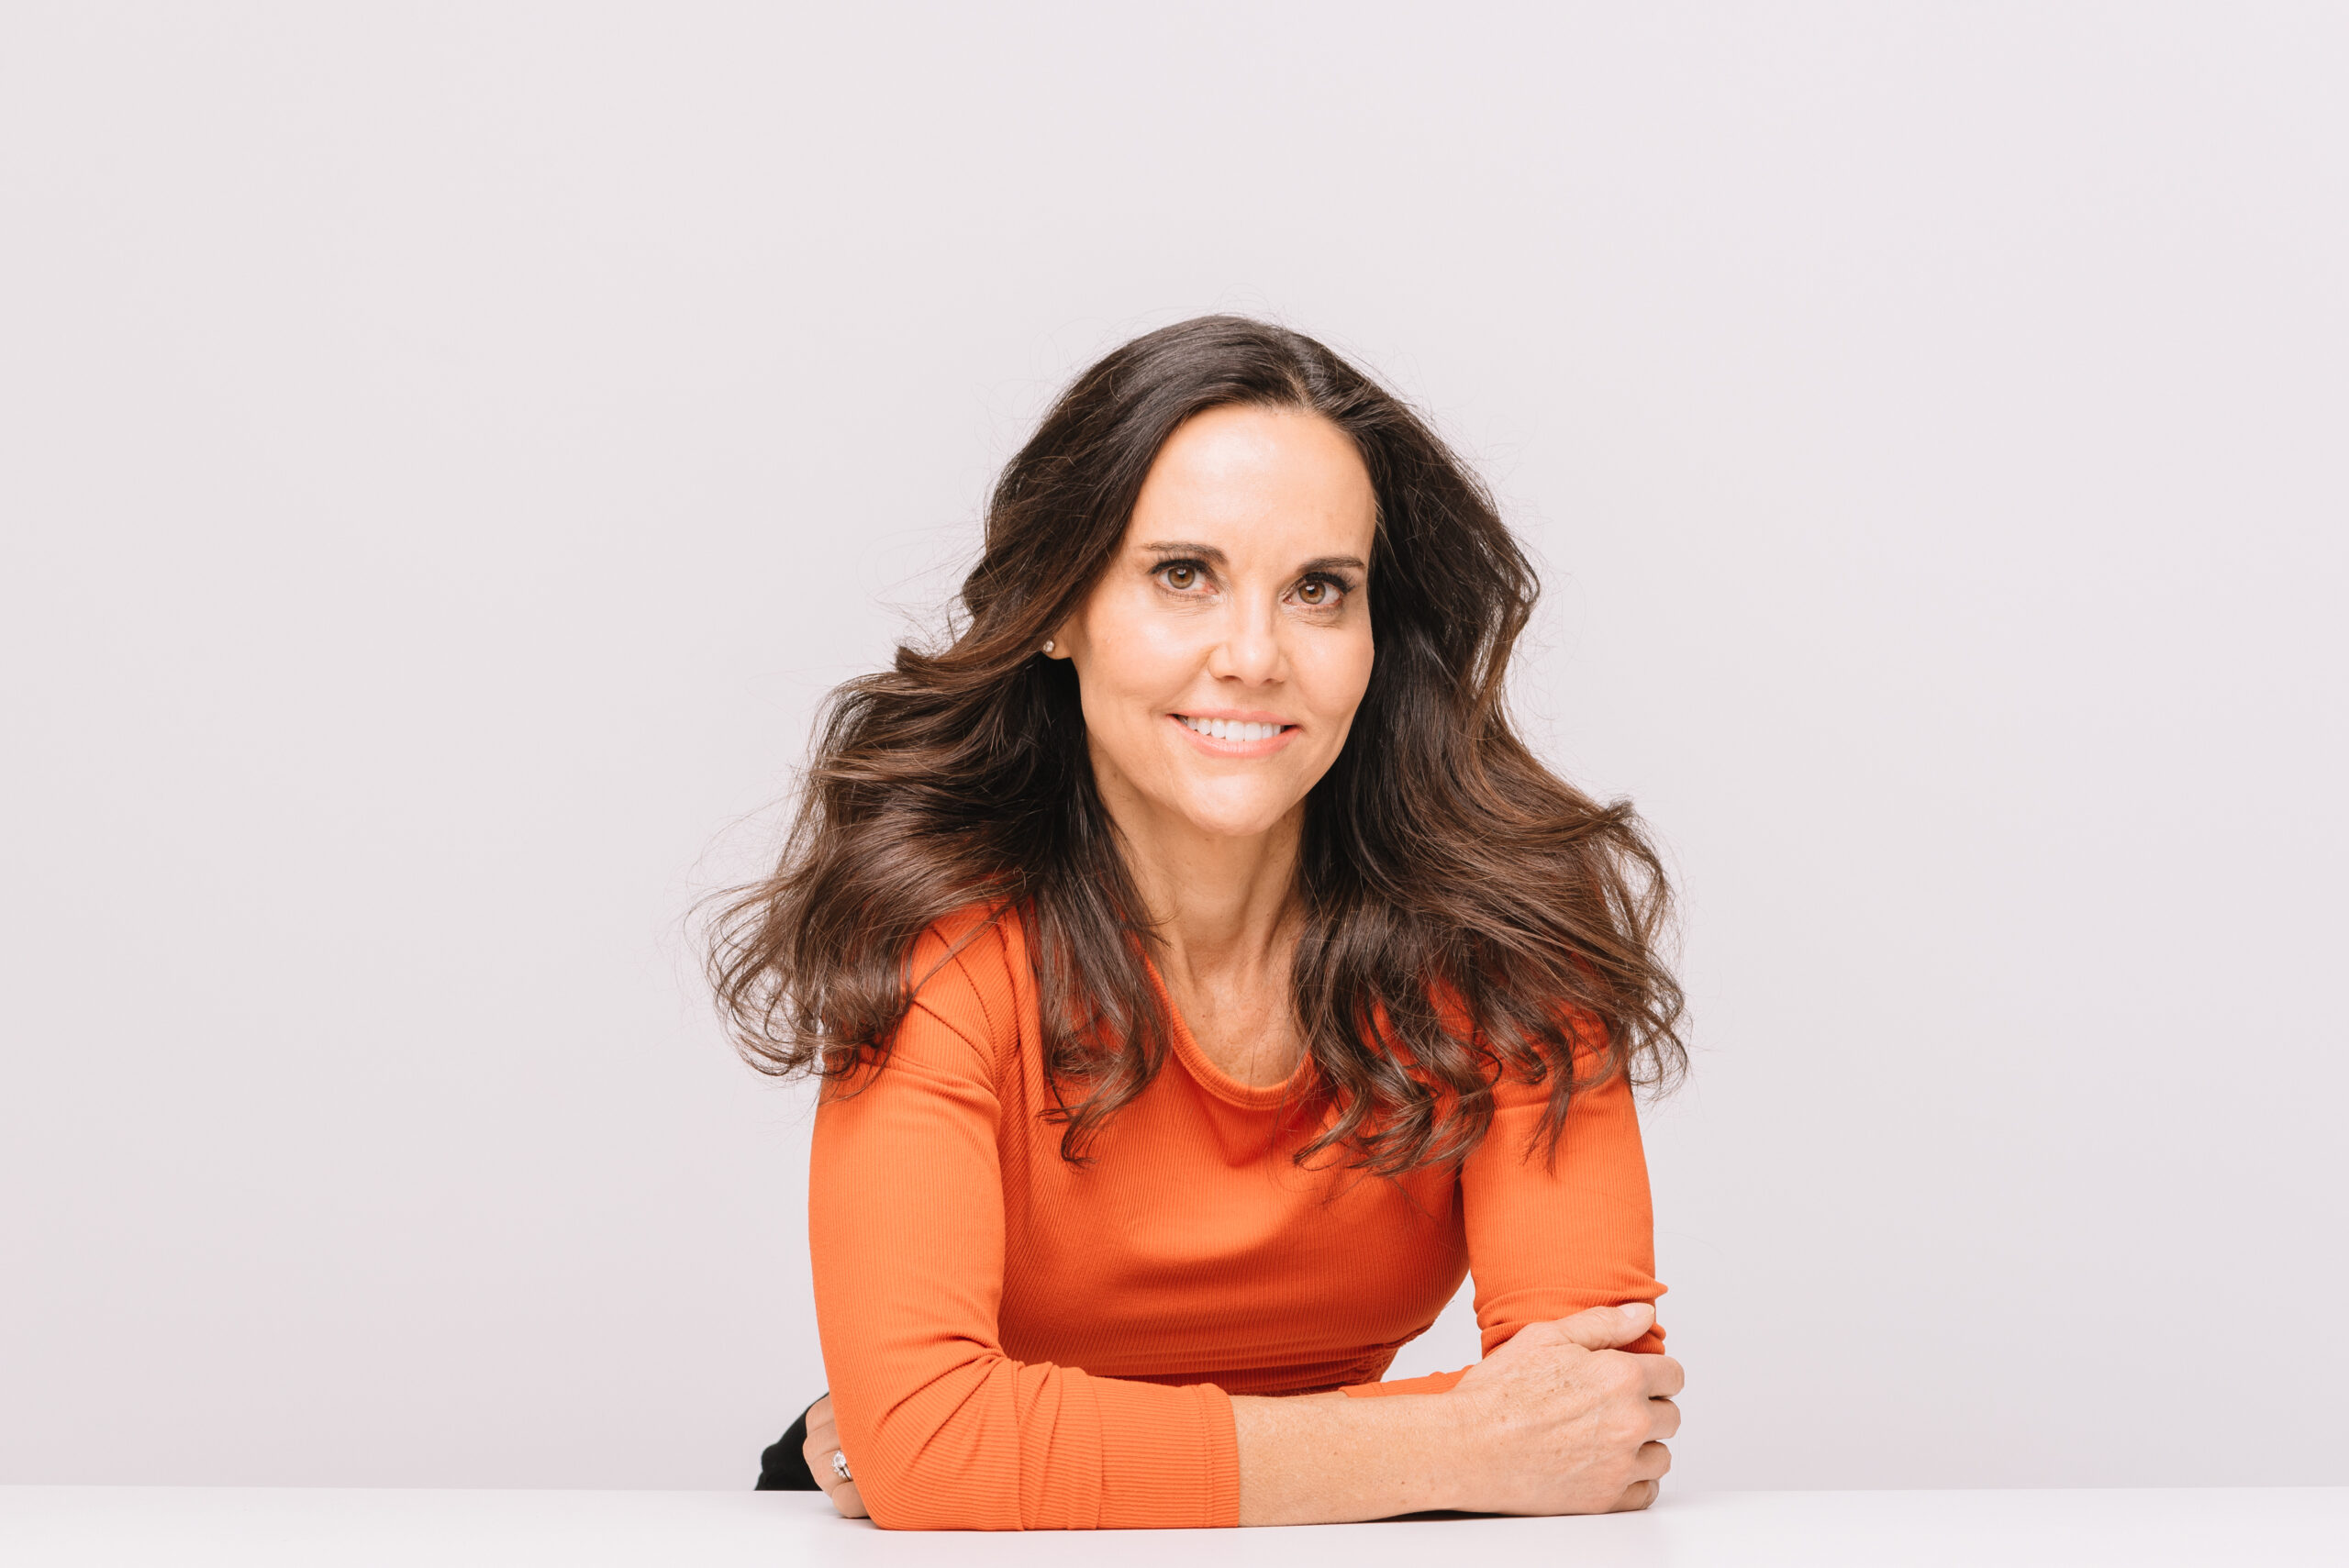 Women's hair loss expert Julie Olson